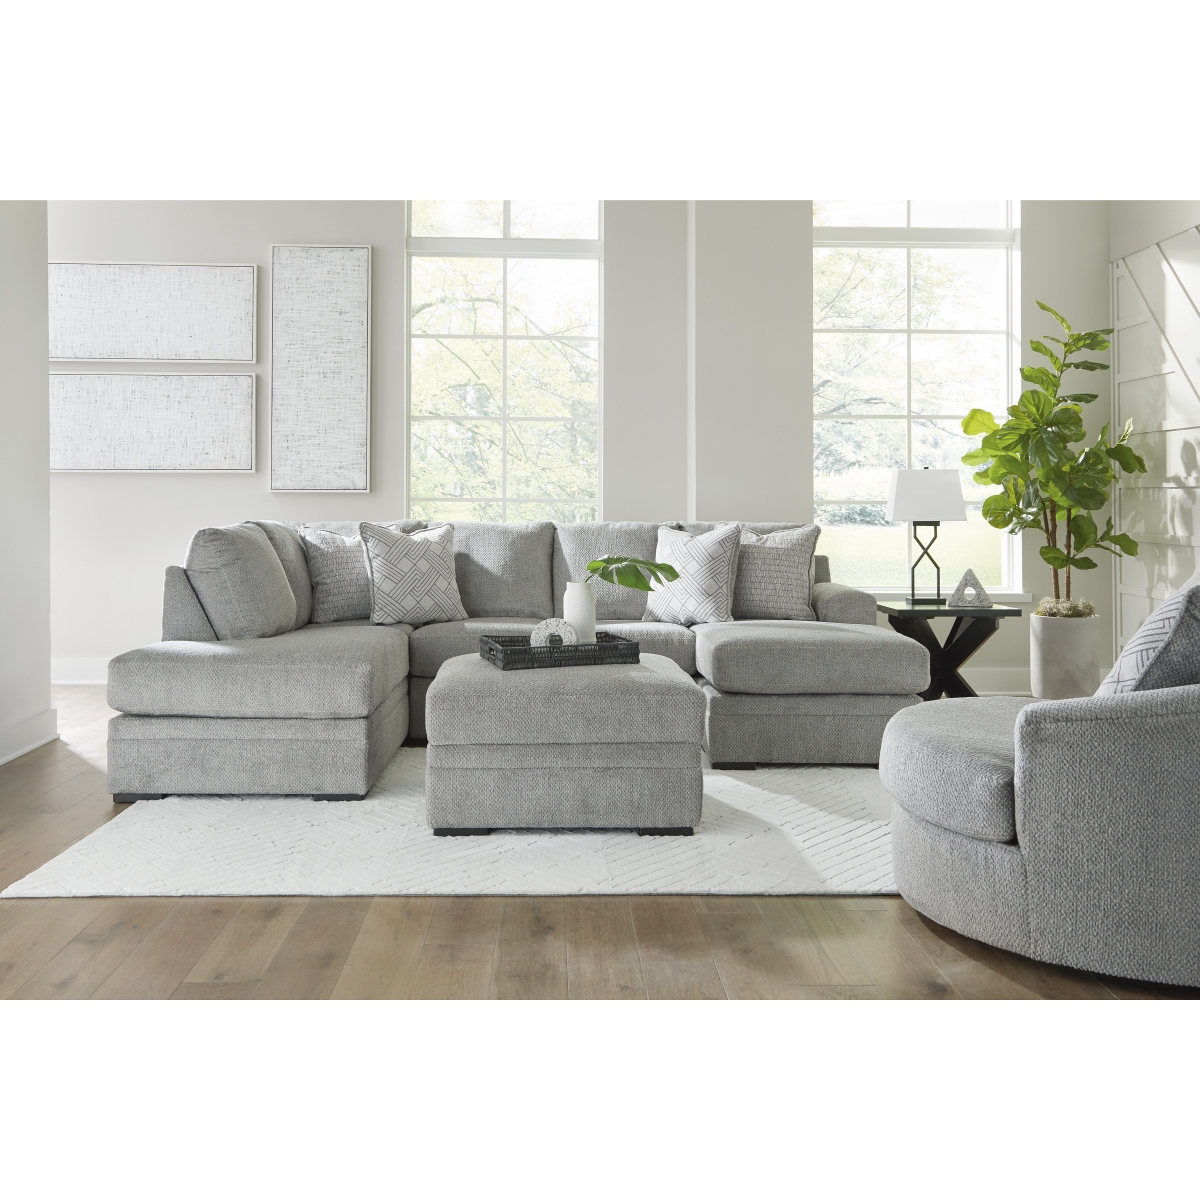 PORCHE & CO. :: Sofa & Sectional Throw Pillow Size Guide — Porche & Co.